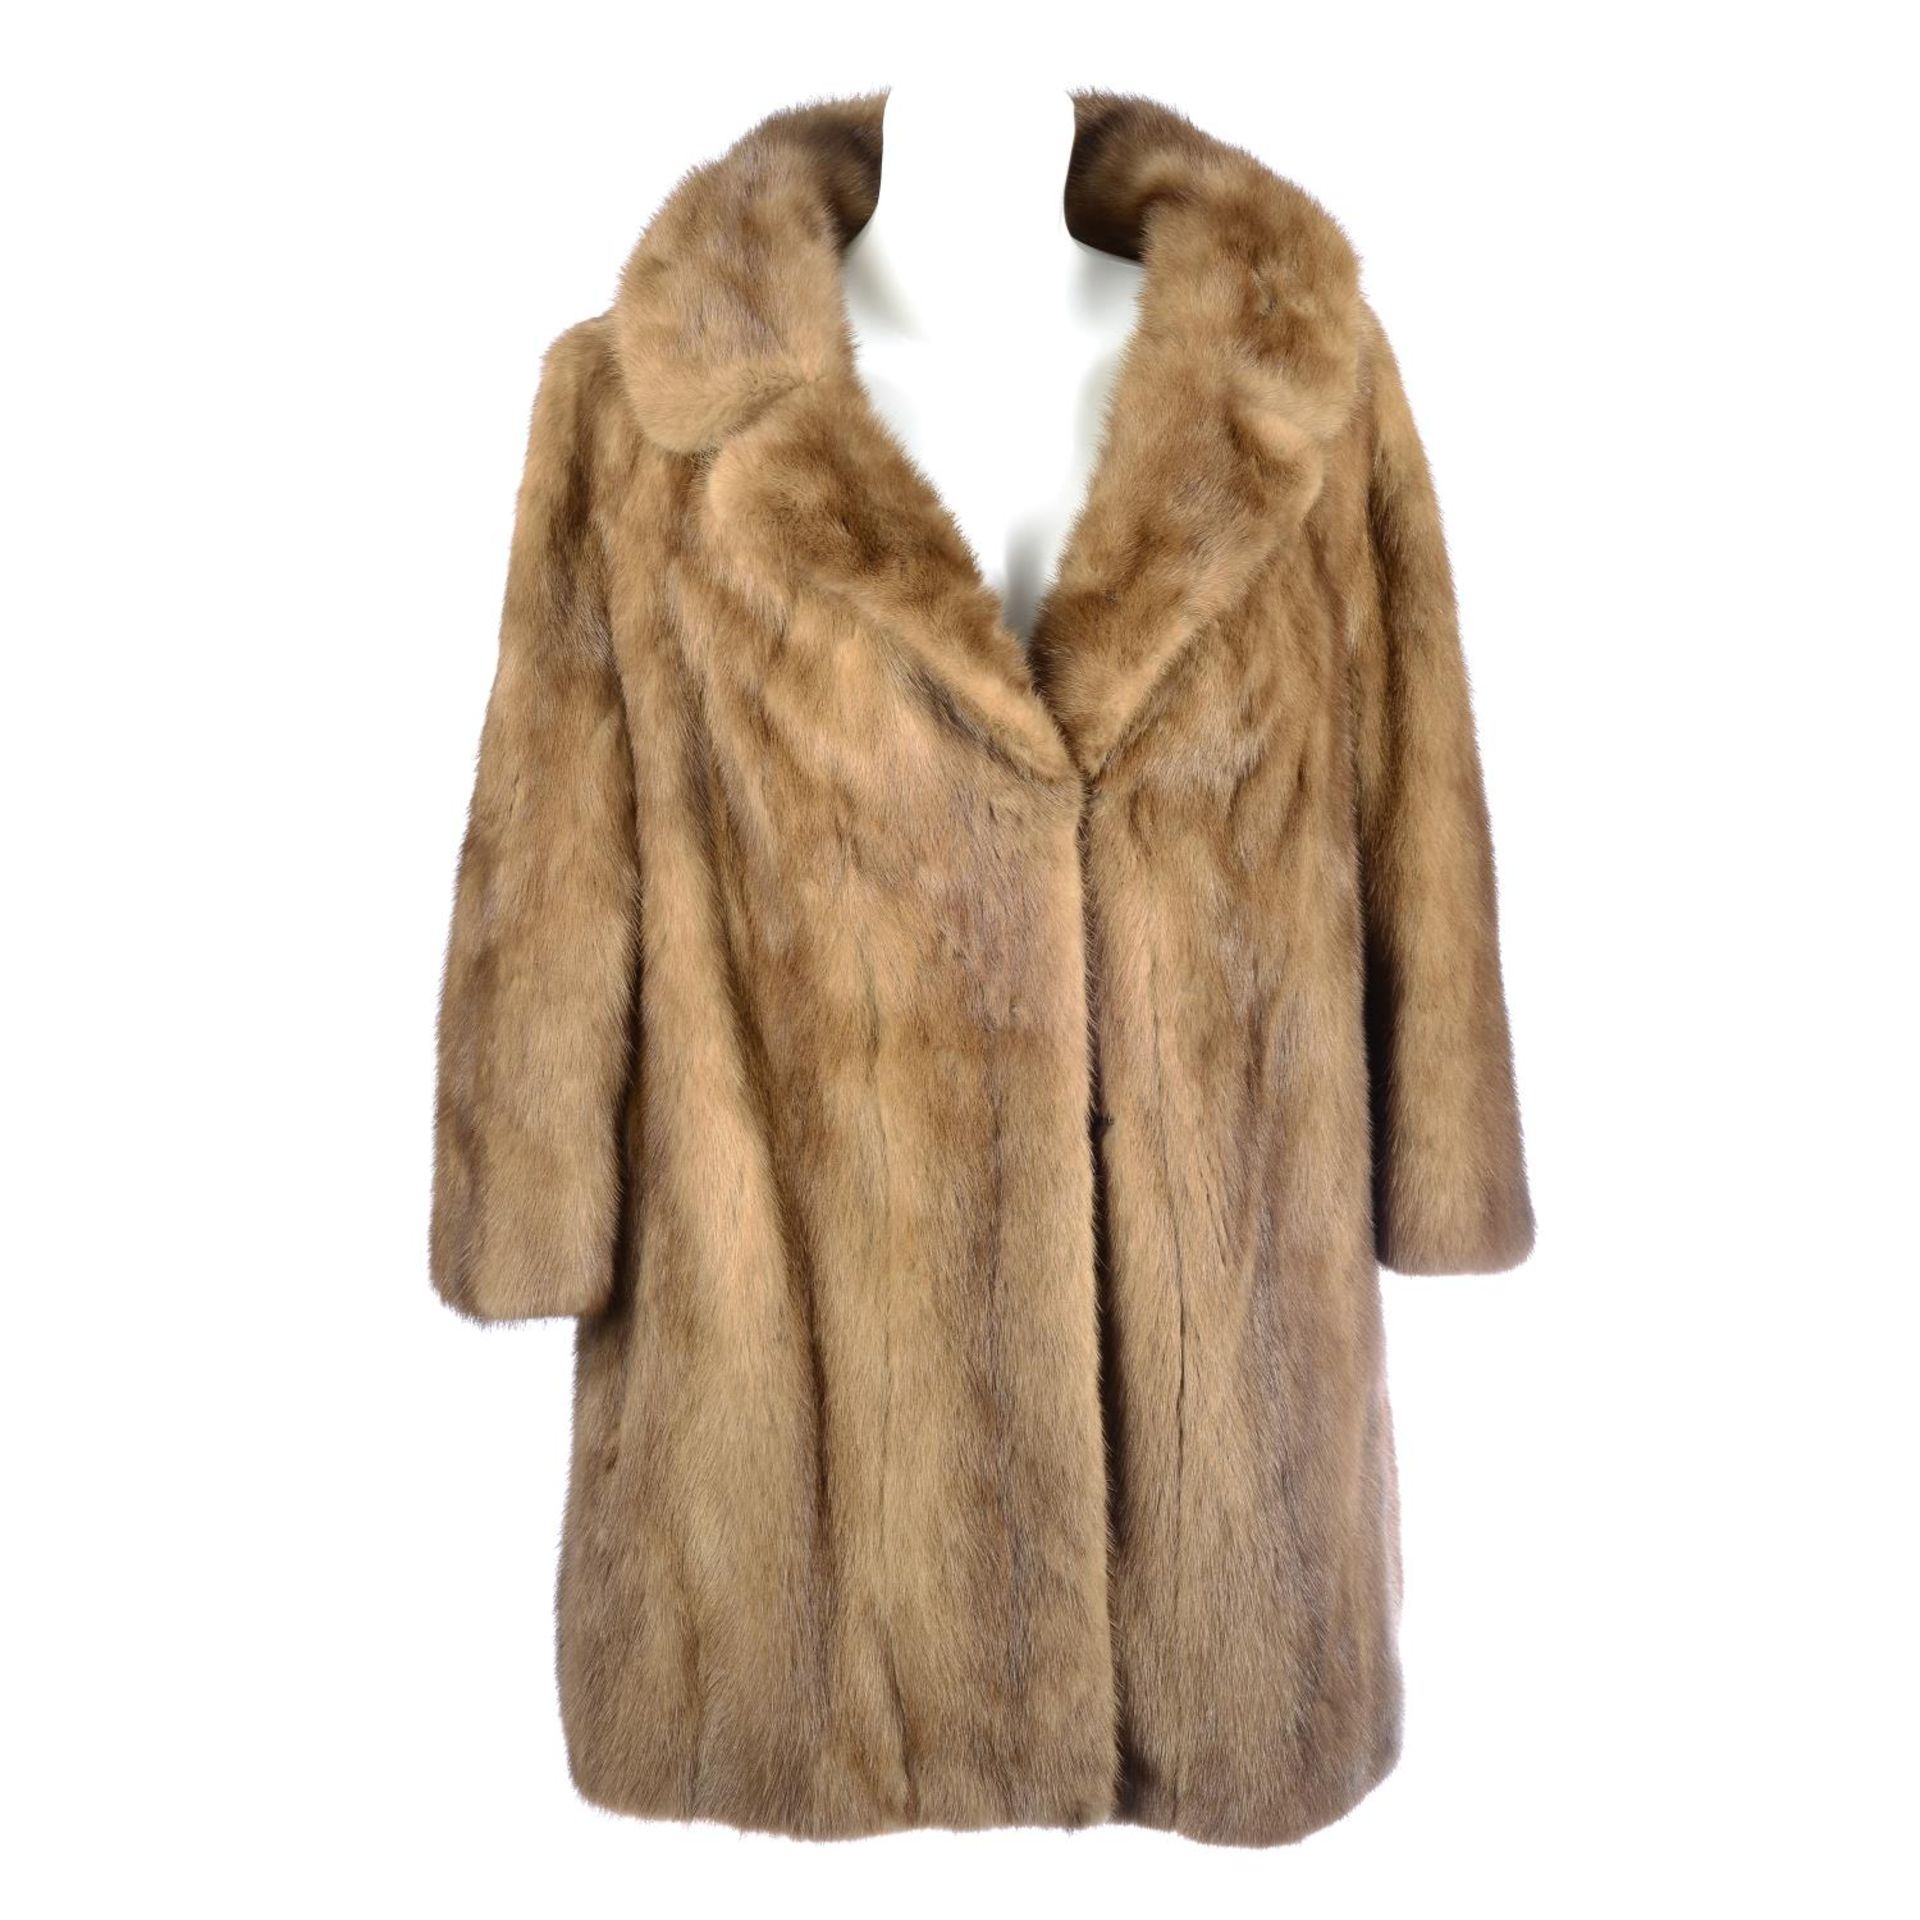 A three-quarter length pastel mink coat.